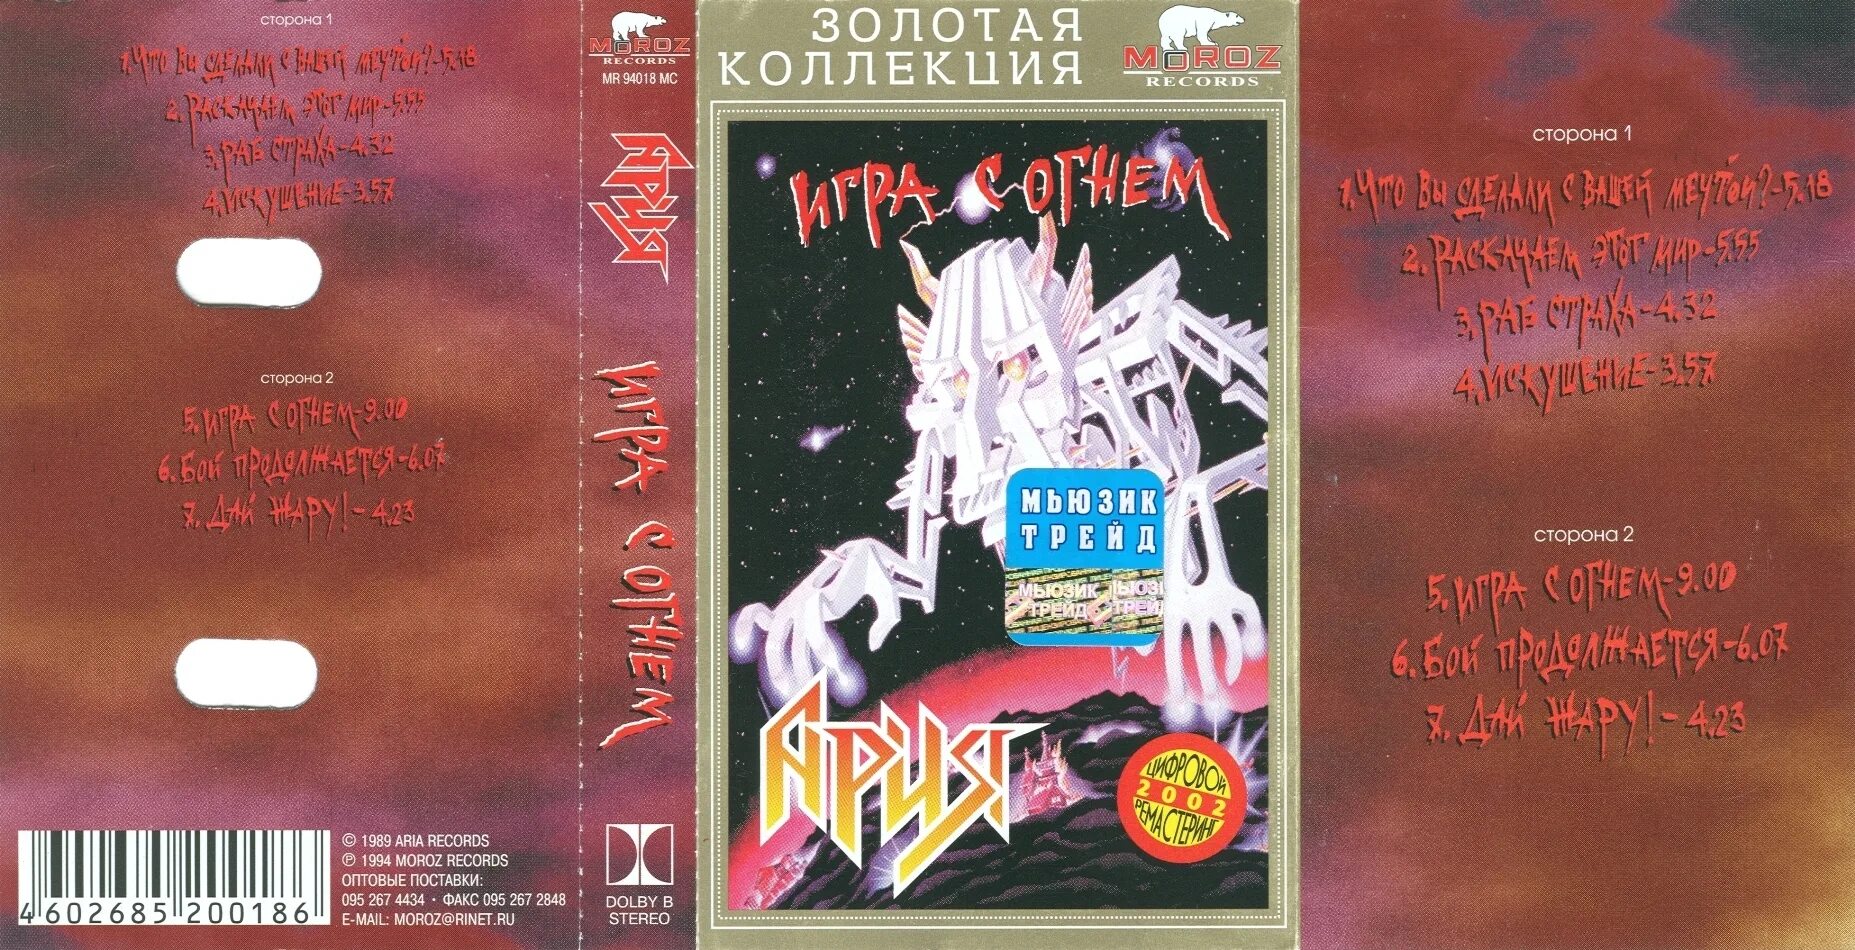 Арии версии. Ария игра с огнем альбом. Ария игра с огнем обложка. Ария - игра с огнем (1989) LP. Ария игра с огнем кассета.